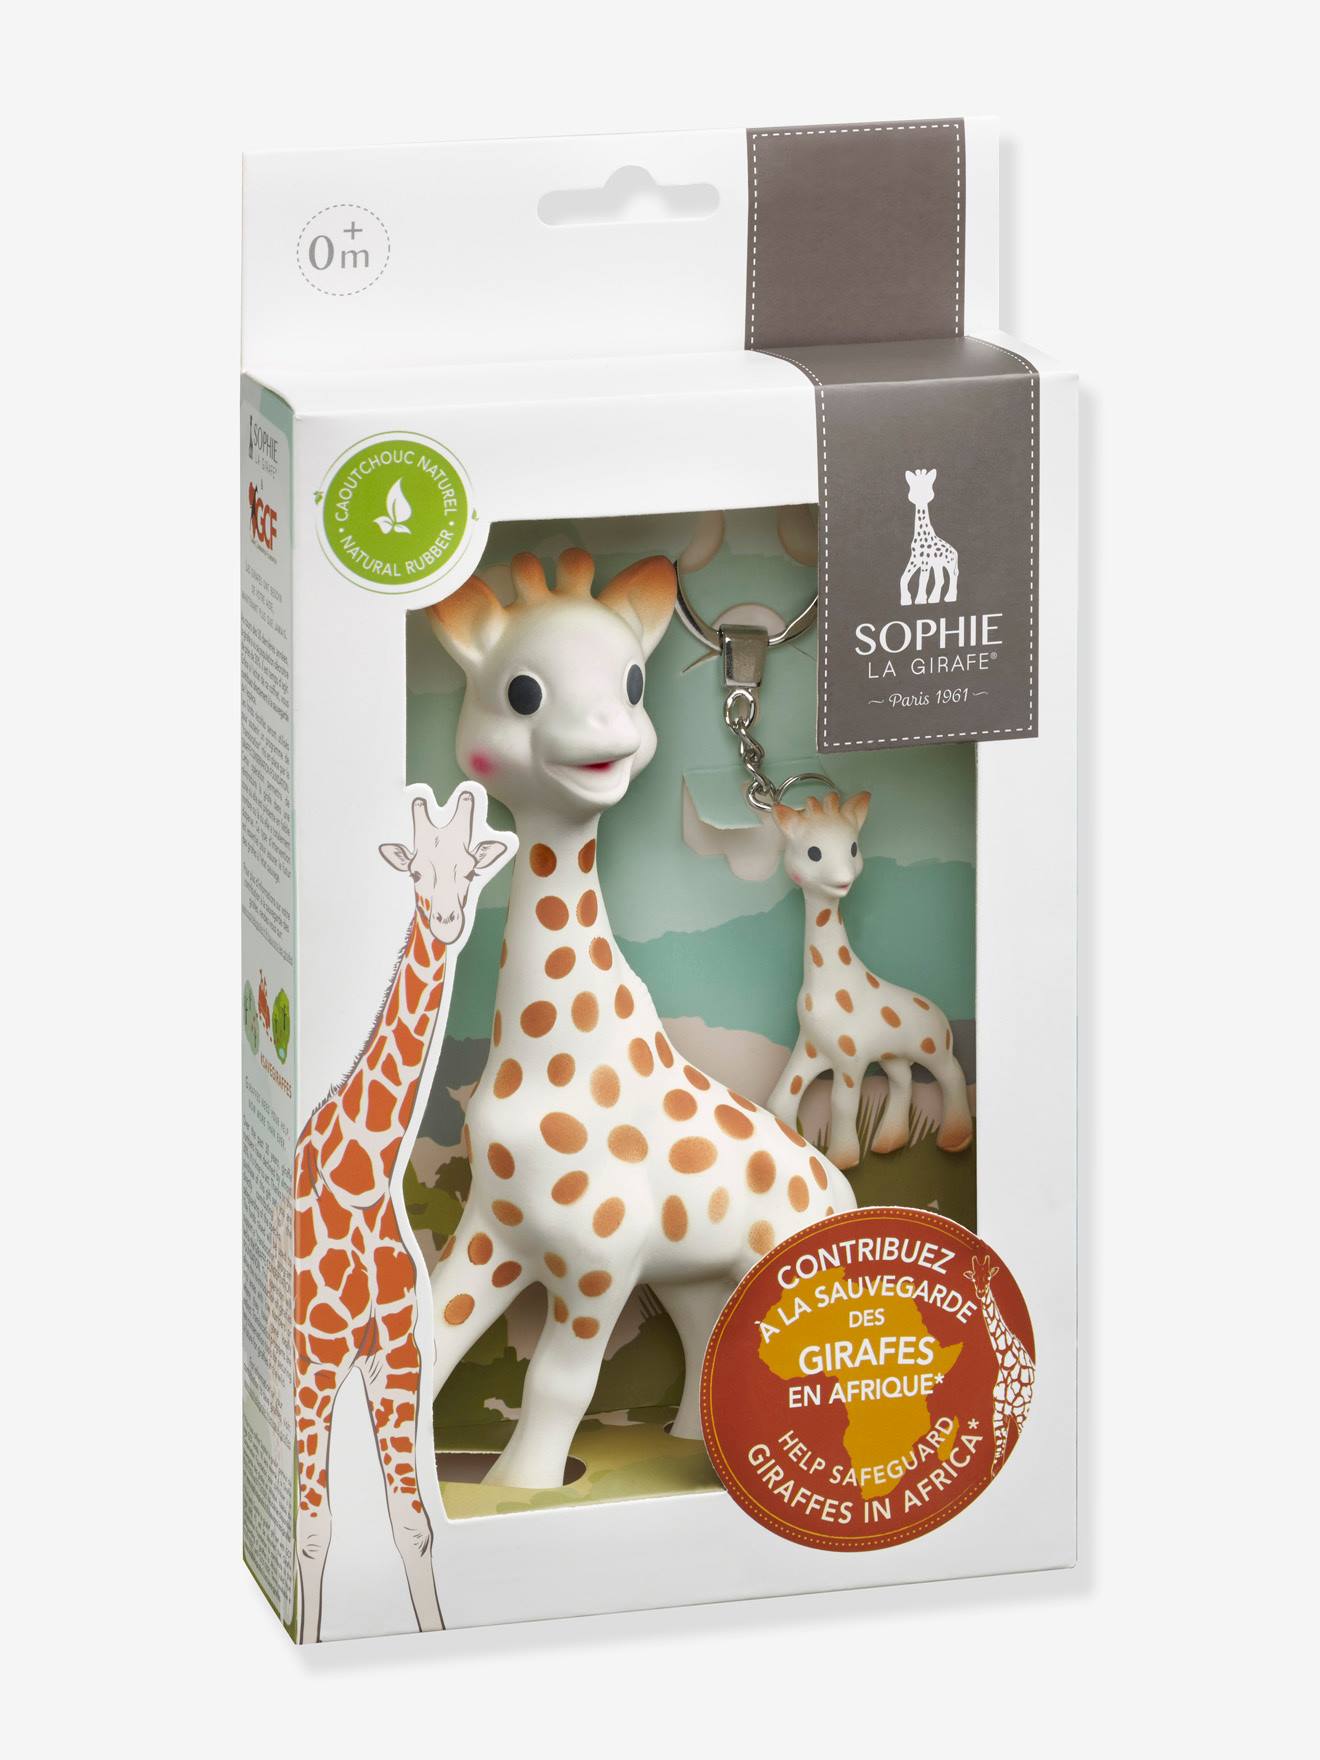 Sophie la girafe Coffret cadeau 0M 616400 VULLI 3056566164004 JEUX